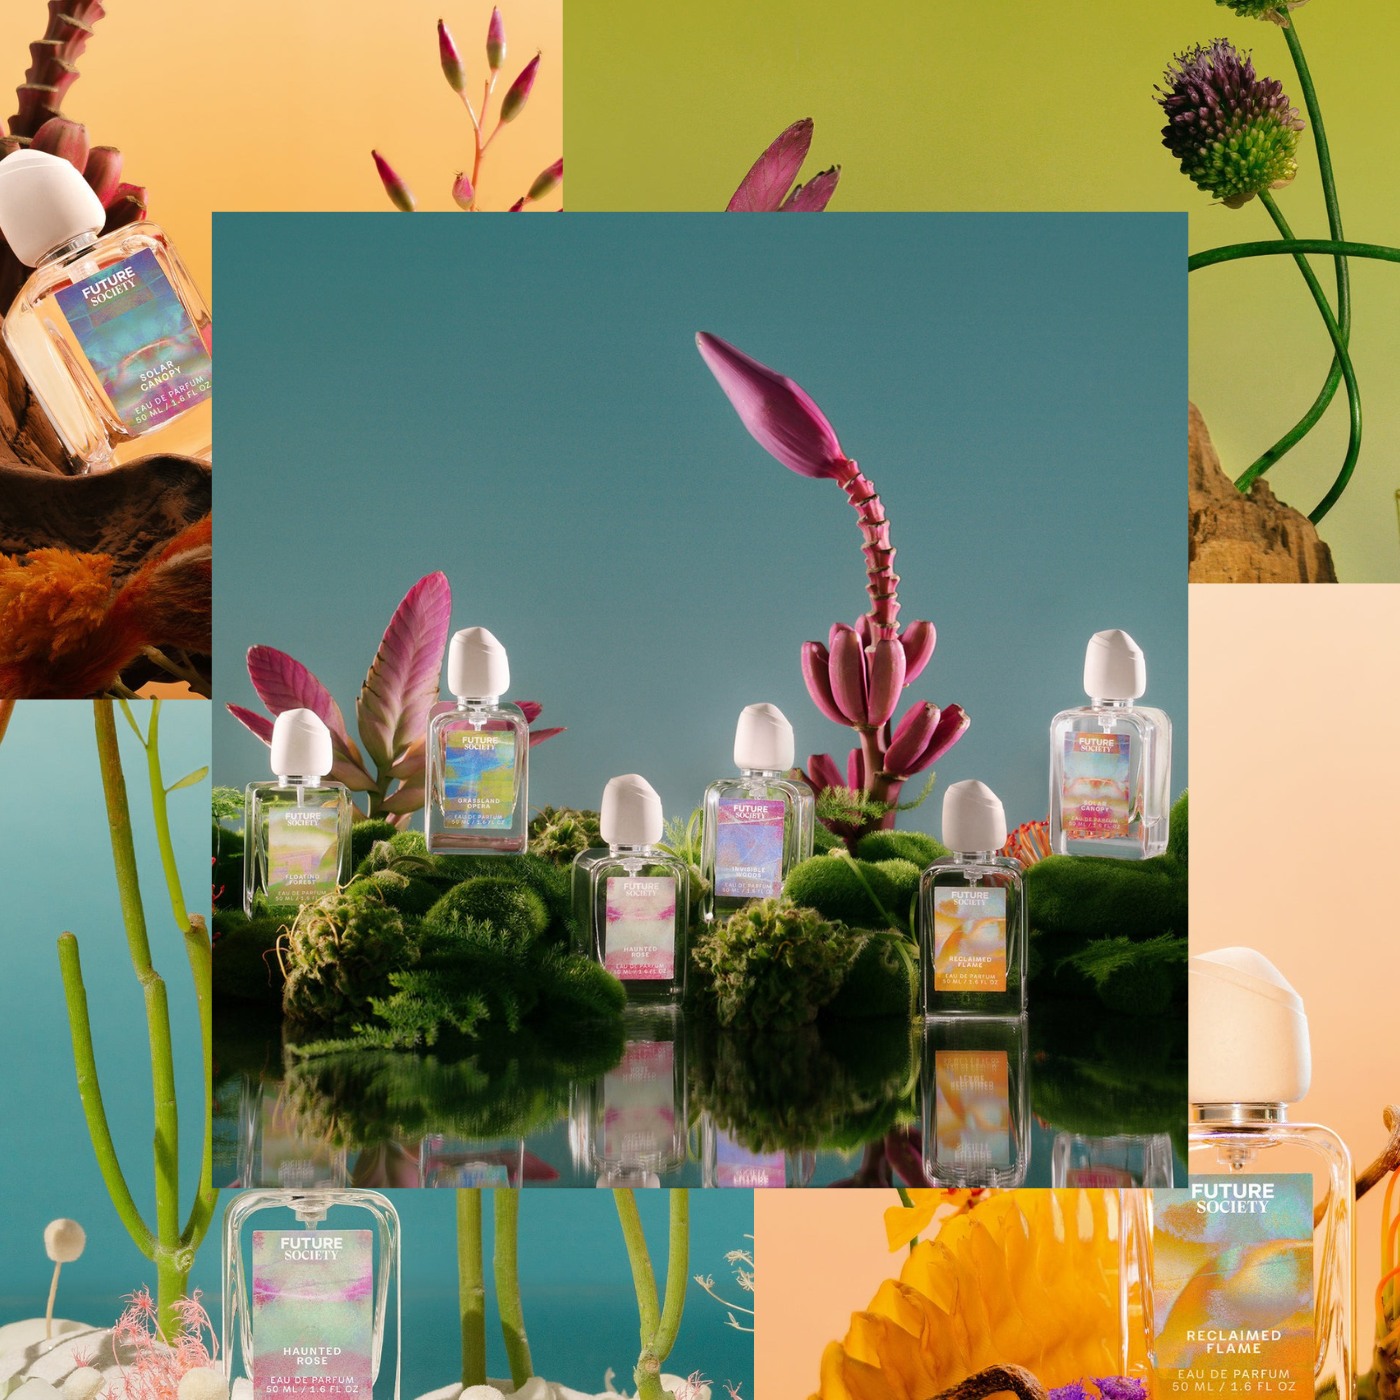 Orange Flower Bloom Zara perfume - a new fragrance for women 2022